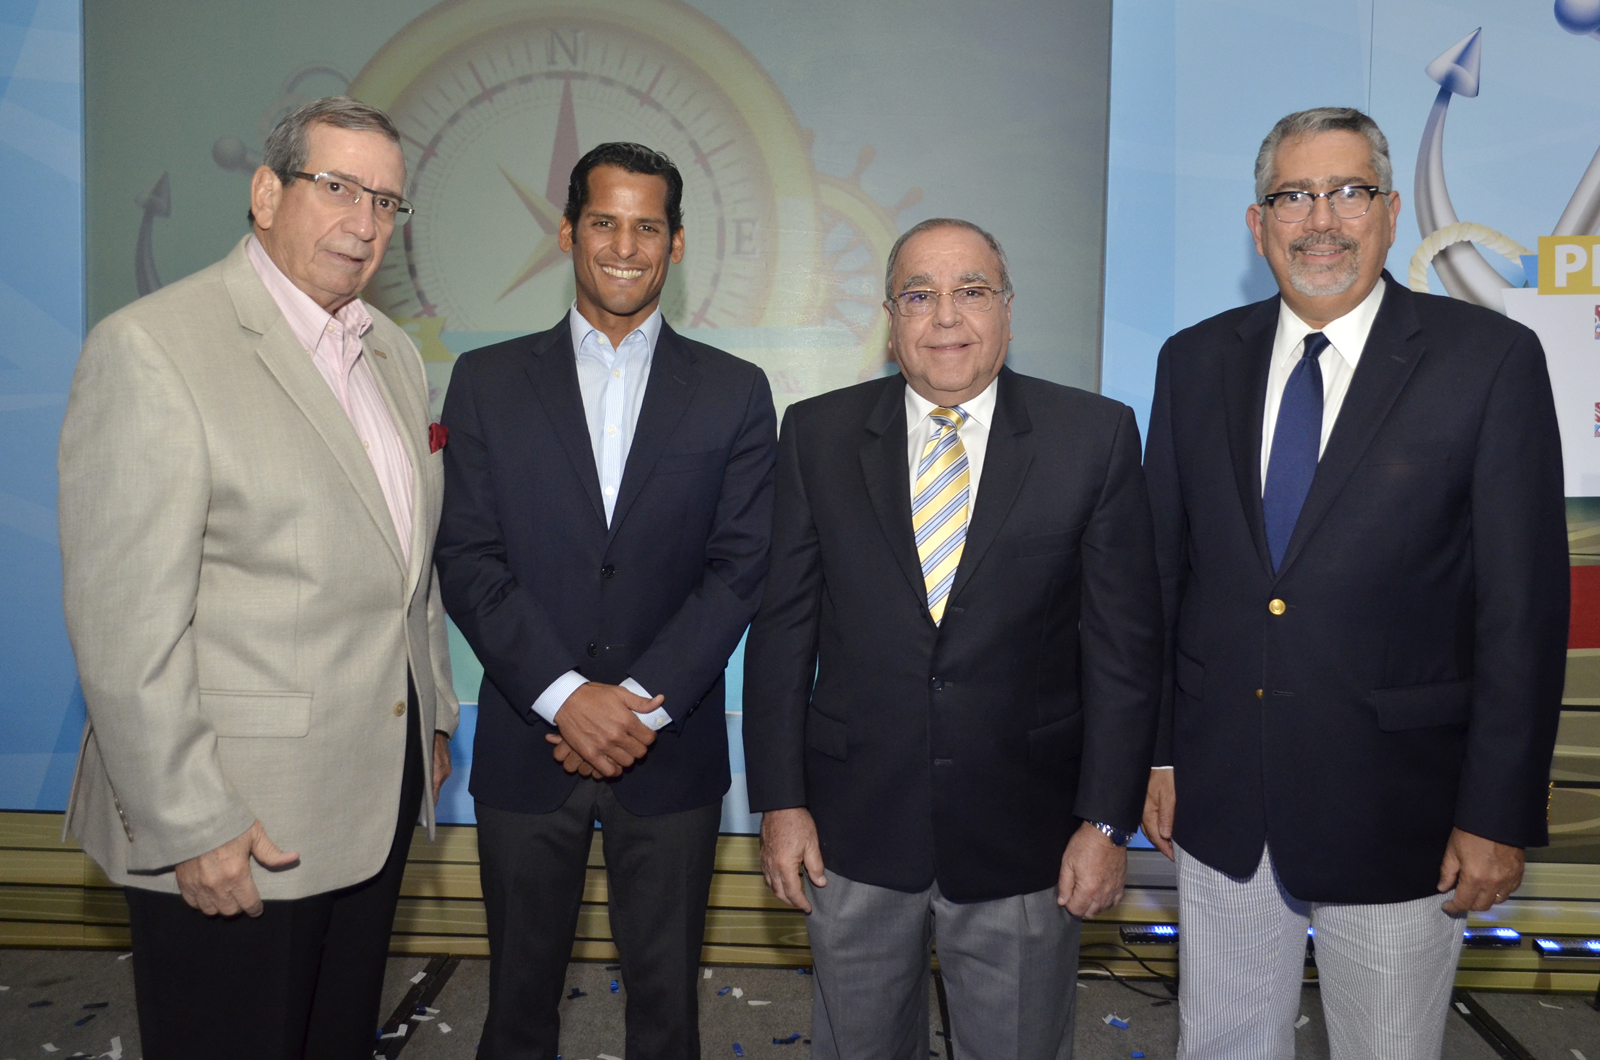 Fotografia Principal Nelson Franco, Marcos Diaz, Raymundo Acra y Enrique Valdez